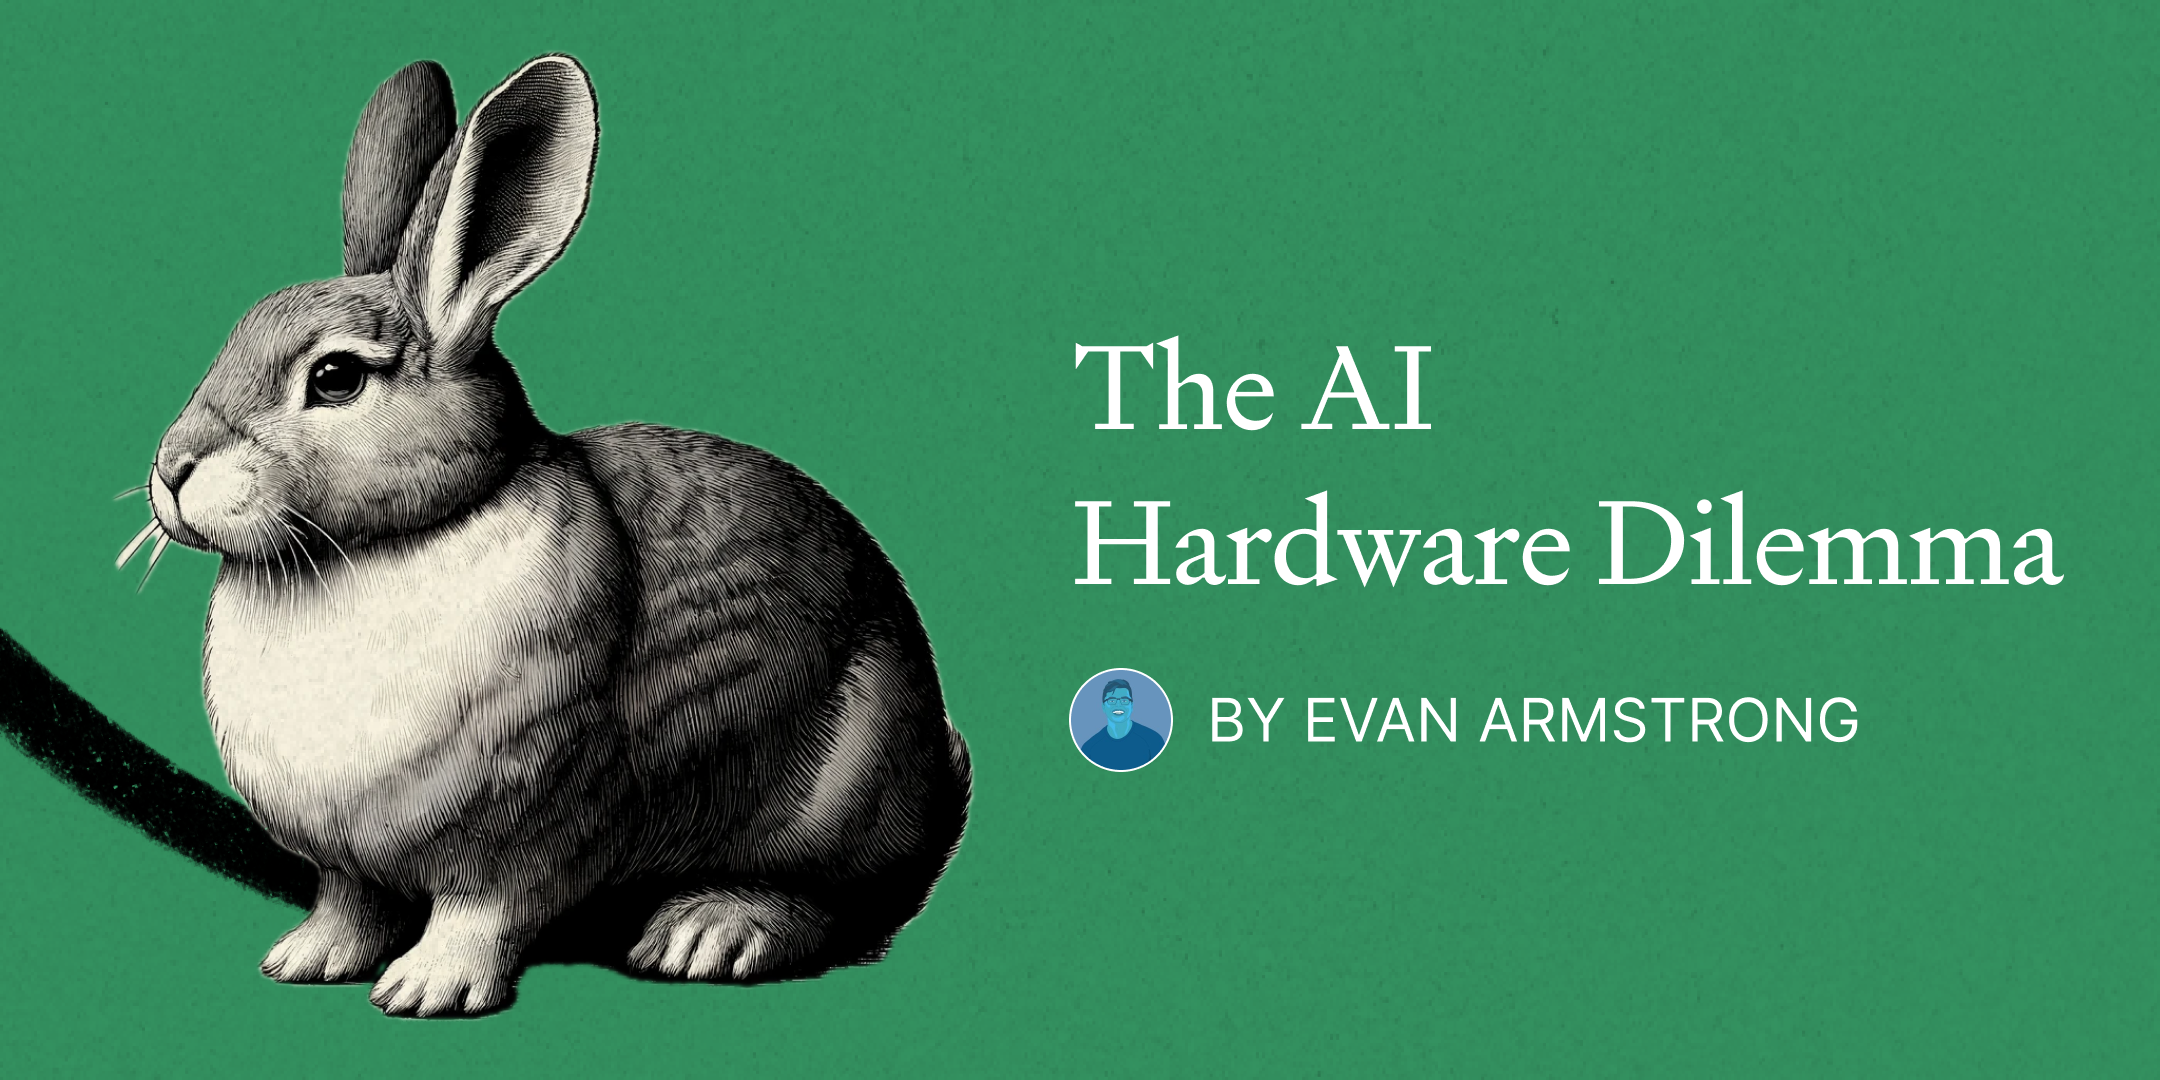 The AI Hardware Dilemma